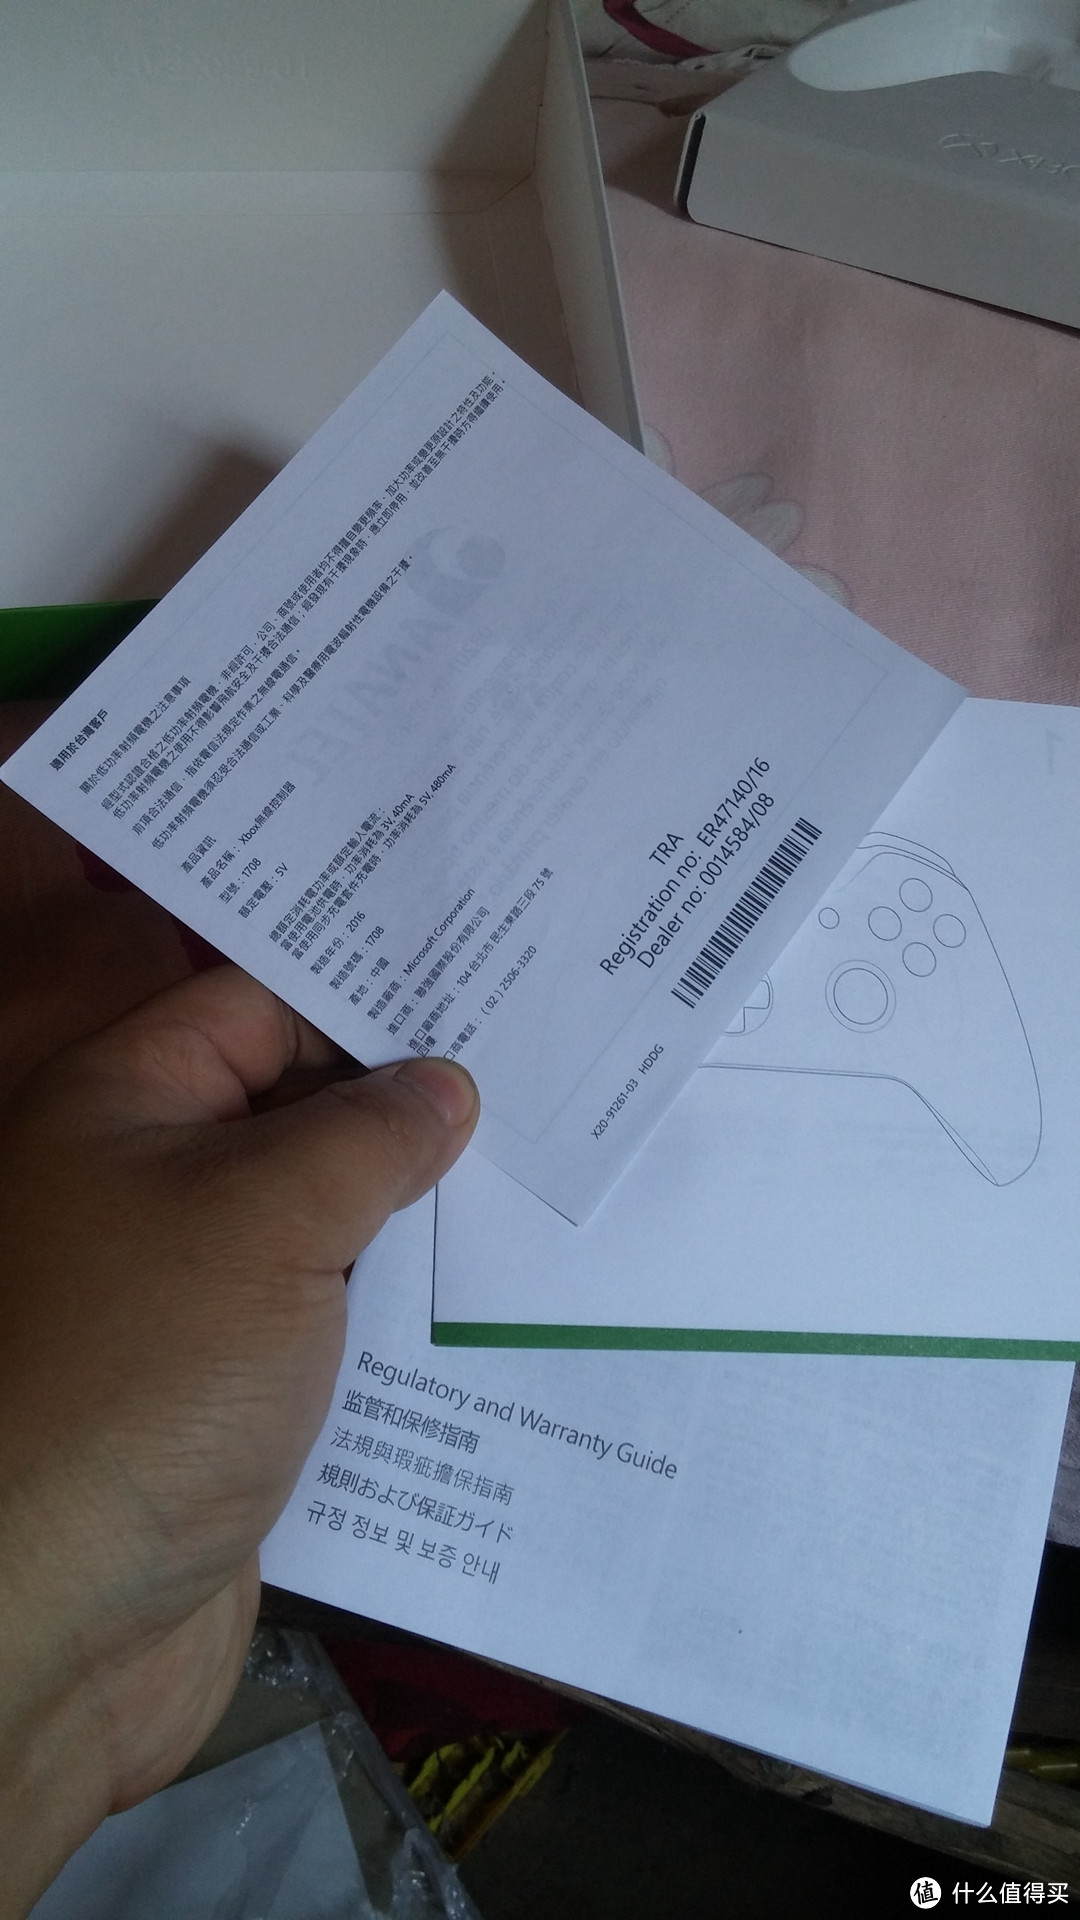 以人为本的手柄大厂 — 新版 Microsoft 微软 Xbox One 无线控制器 冬日武力